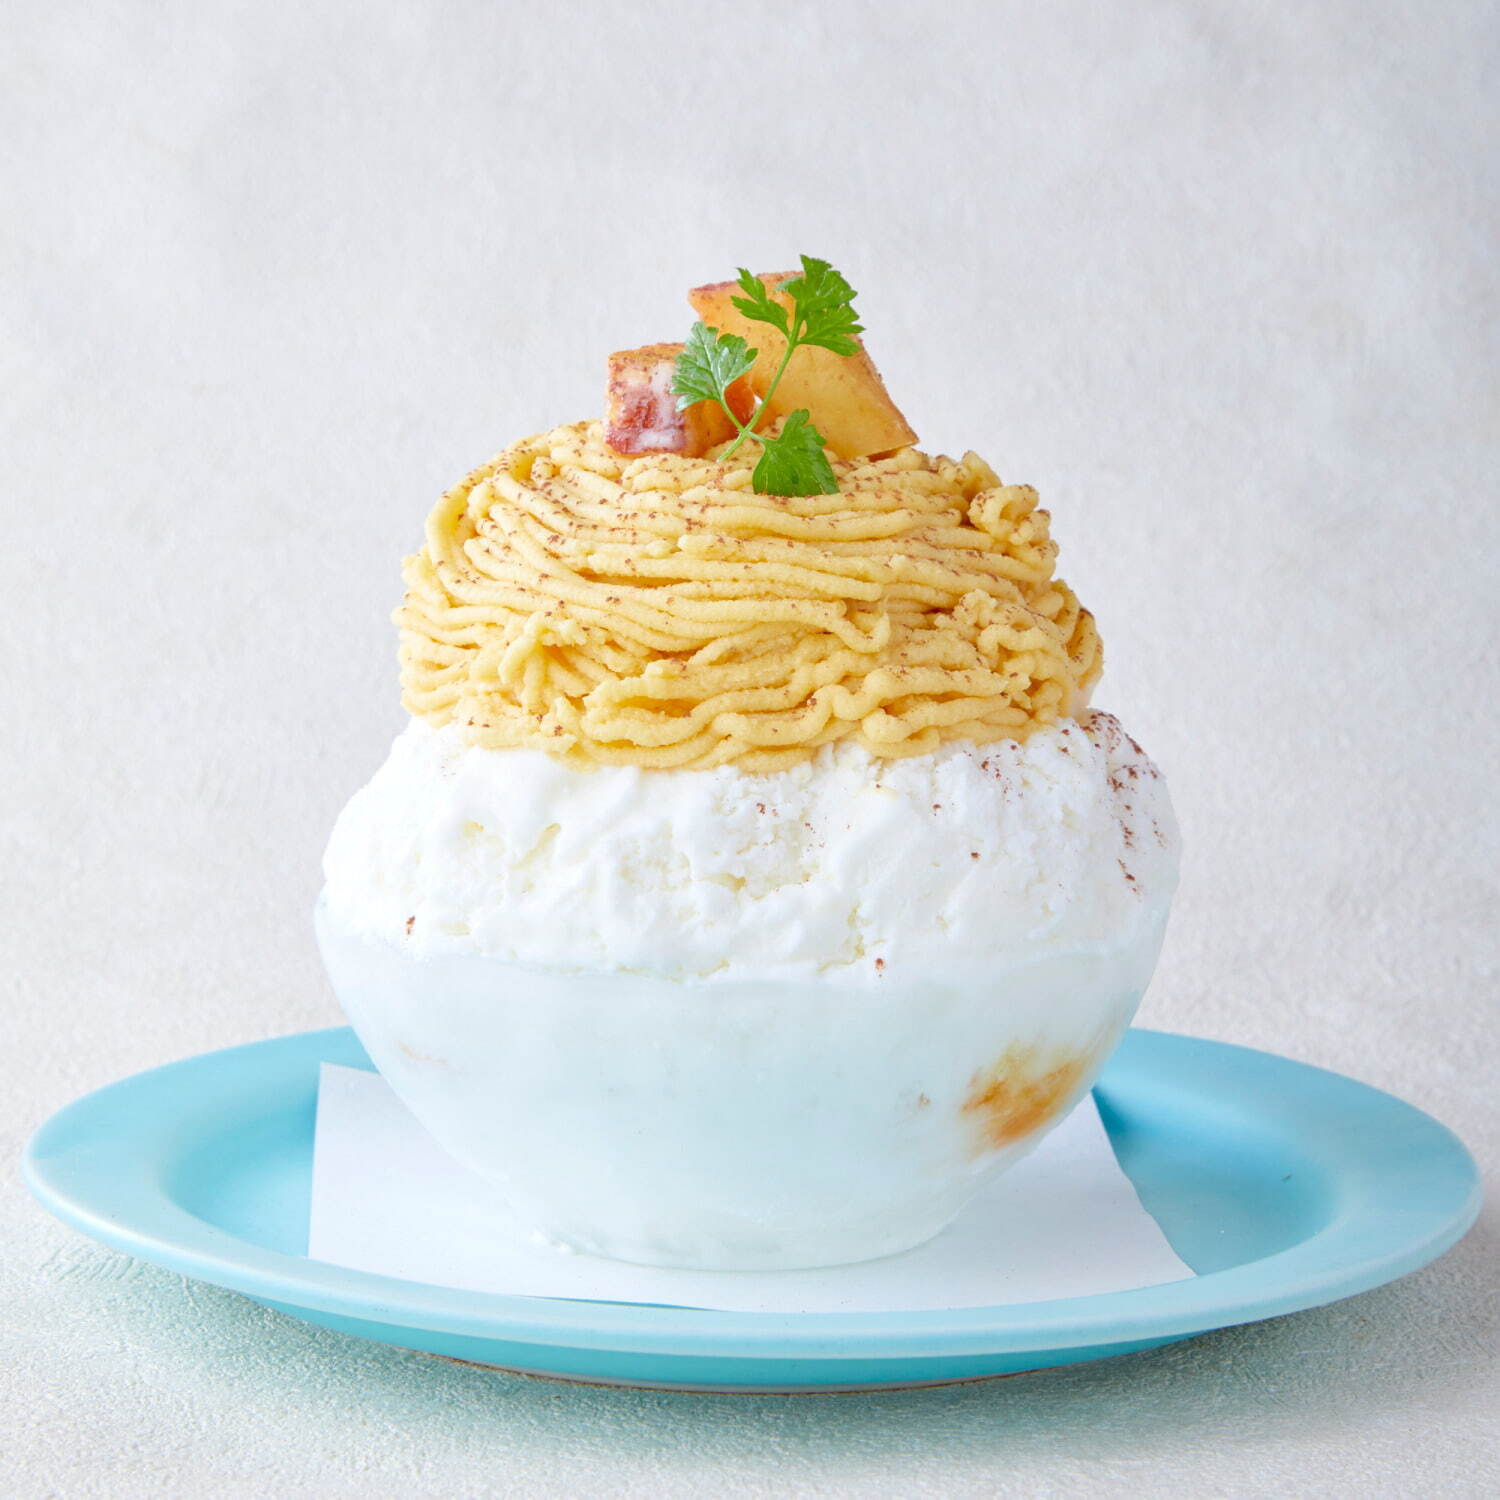 「安納芋のモンブラン みるく氷」1,320円